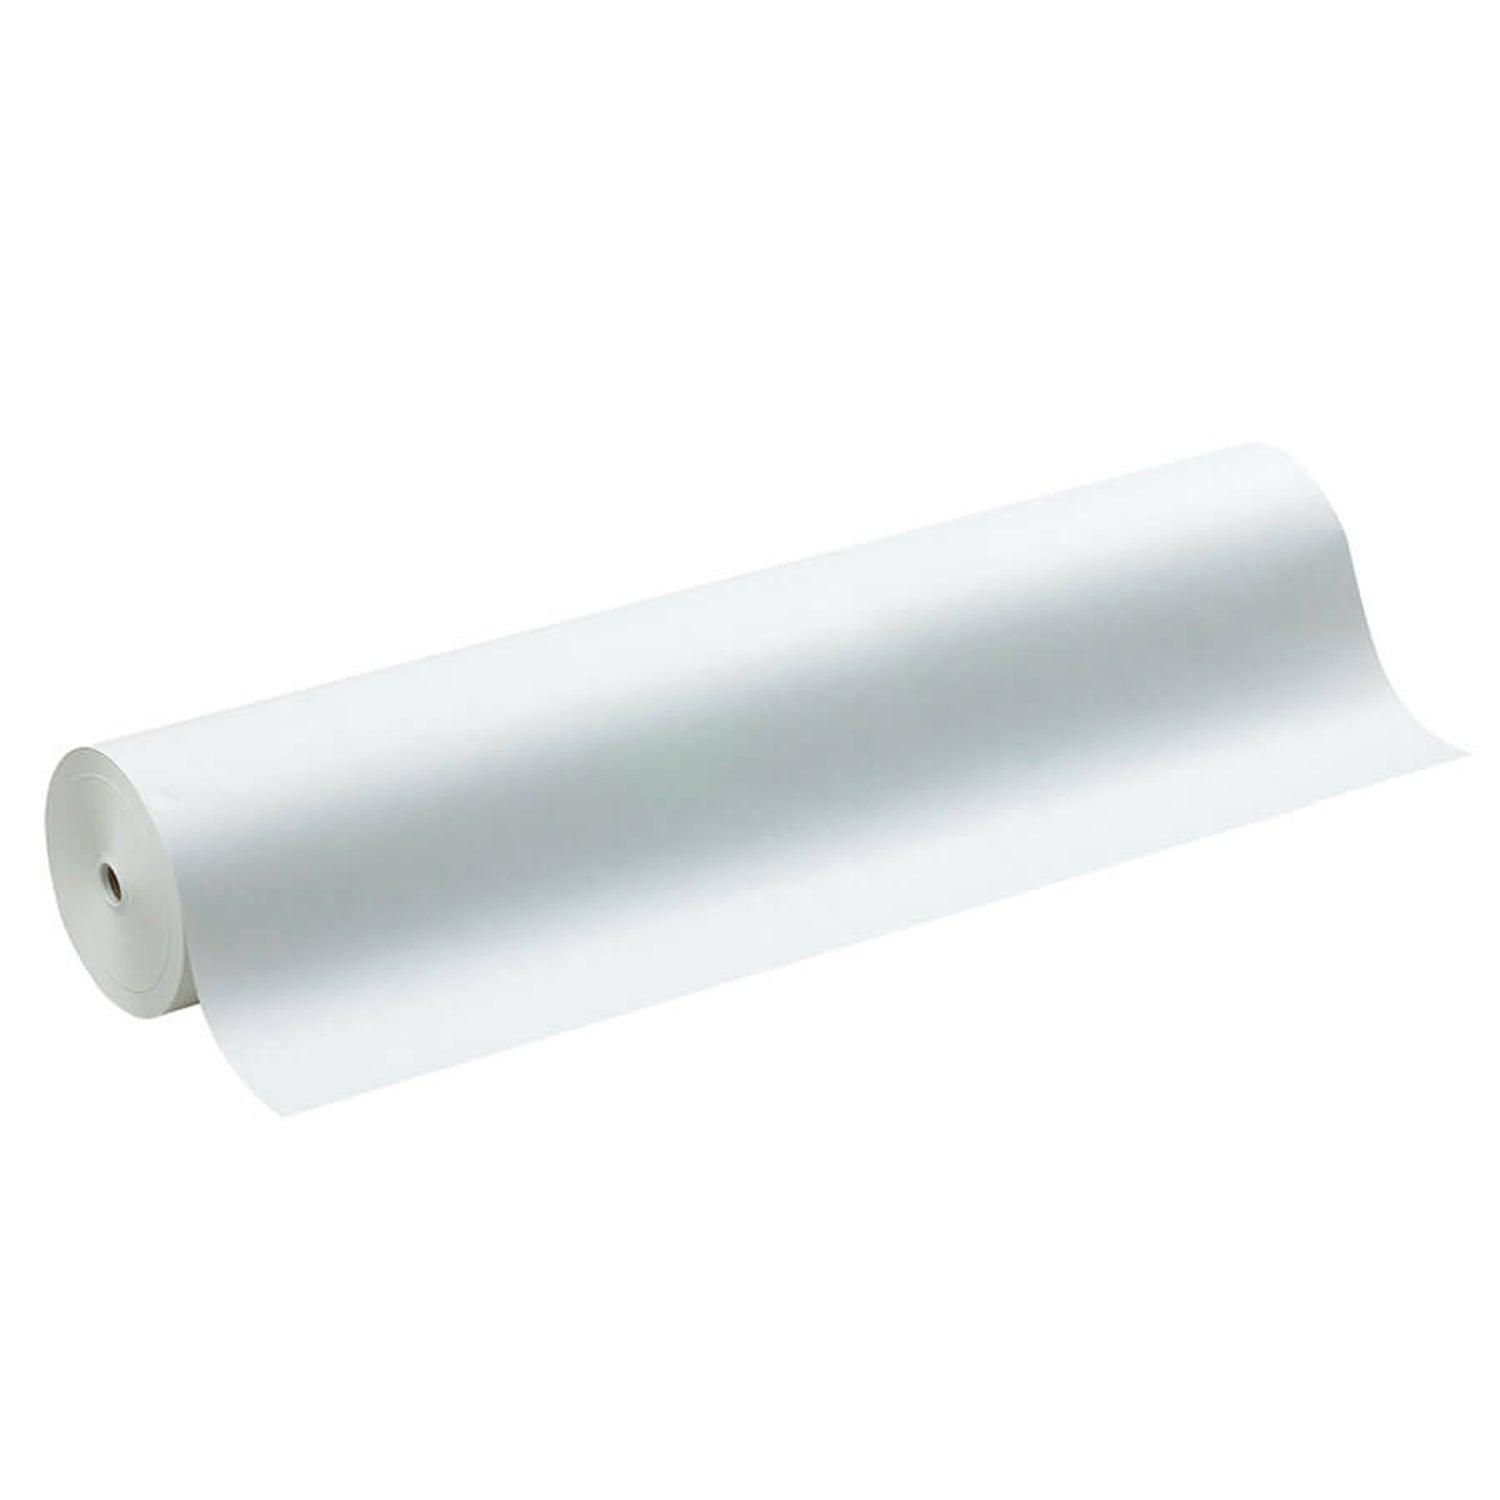 Lightweight Kraft Paper Roll, White, 48" x 1,000', 1 Roll - Loomini